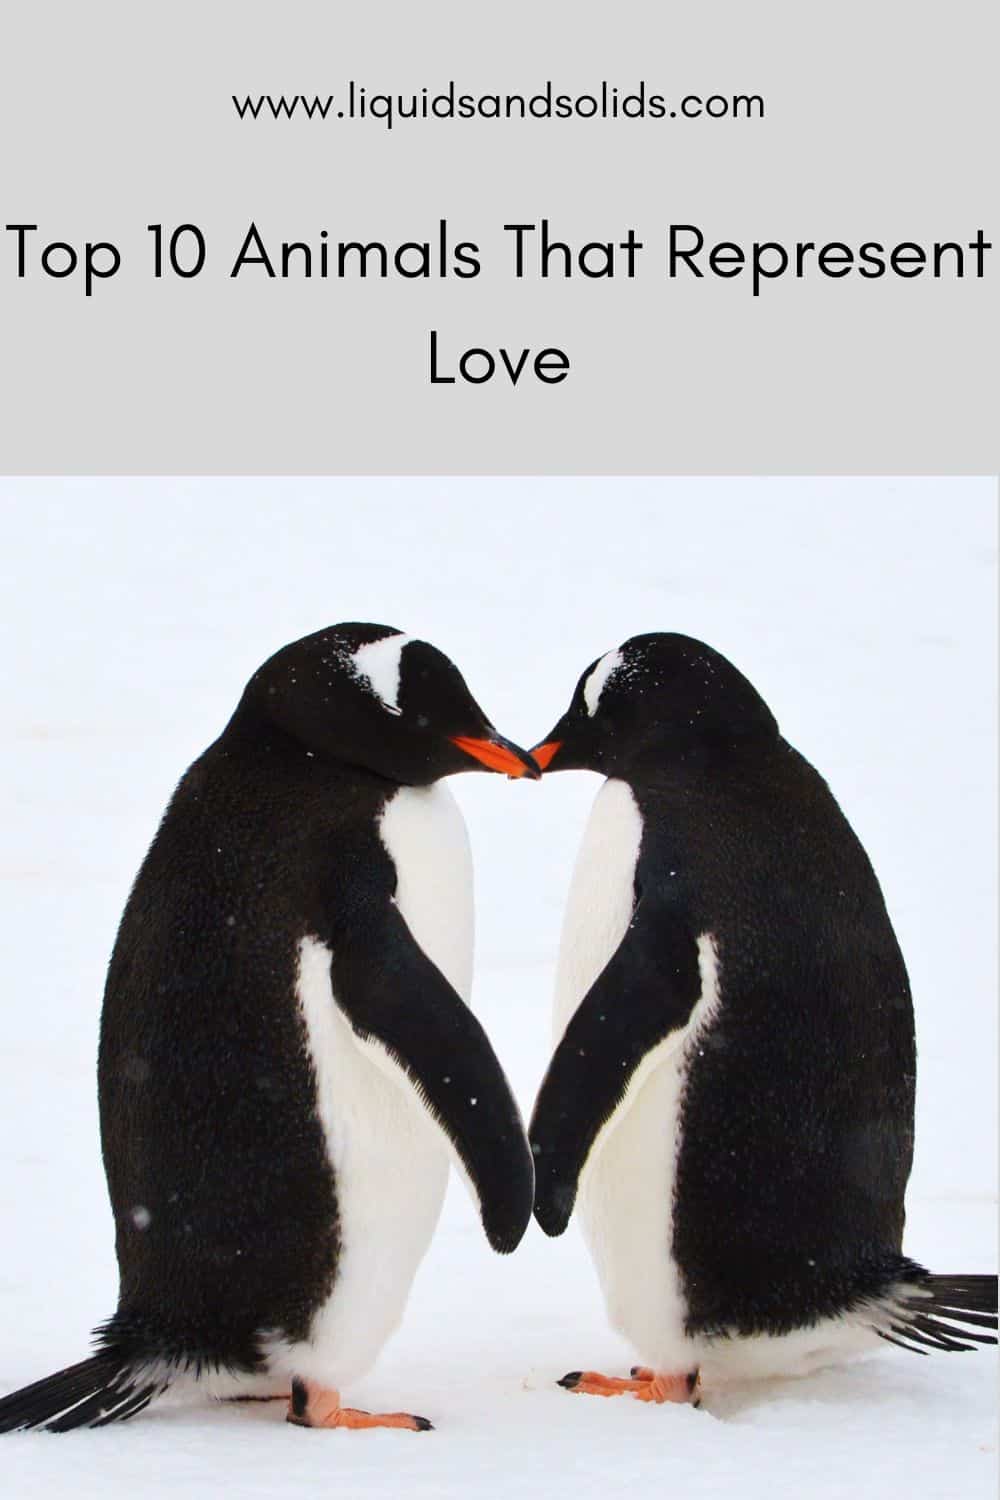  ტოპ 10 ცხოველი, რომლებიც წარმოადგენენ სიყვარულს